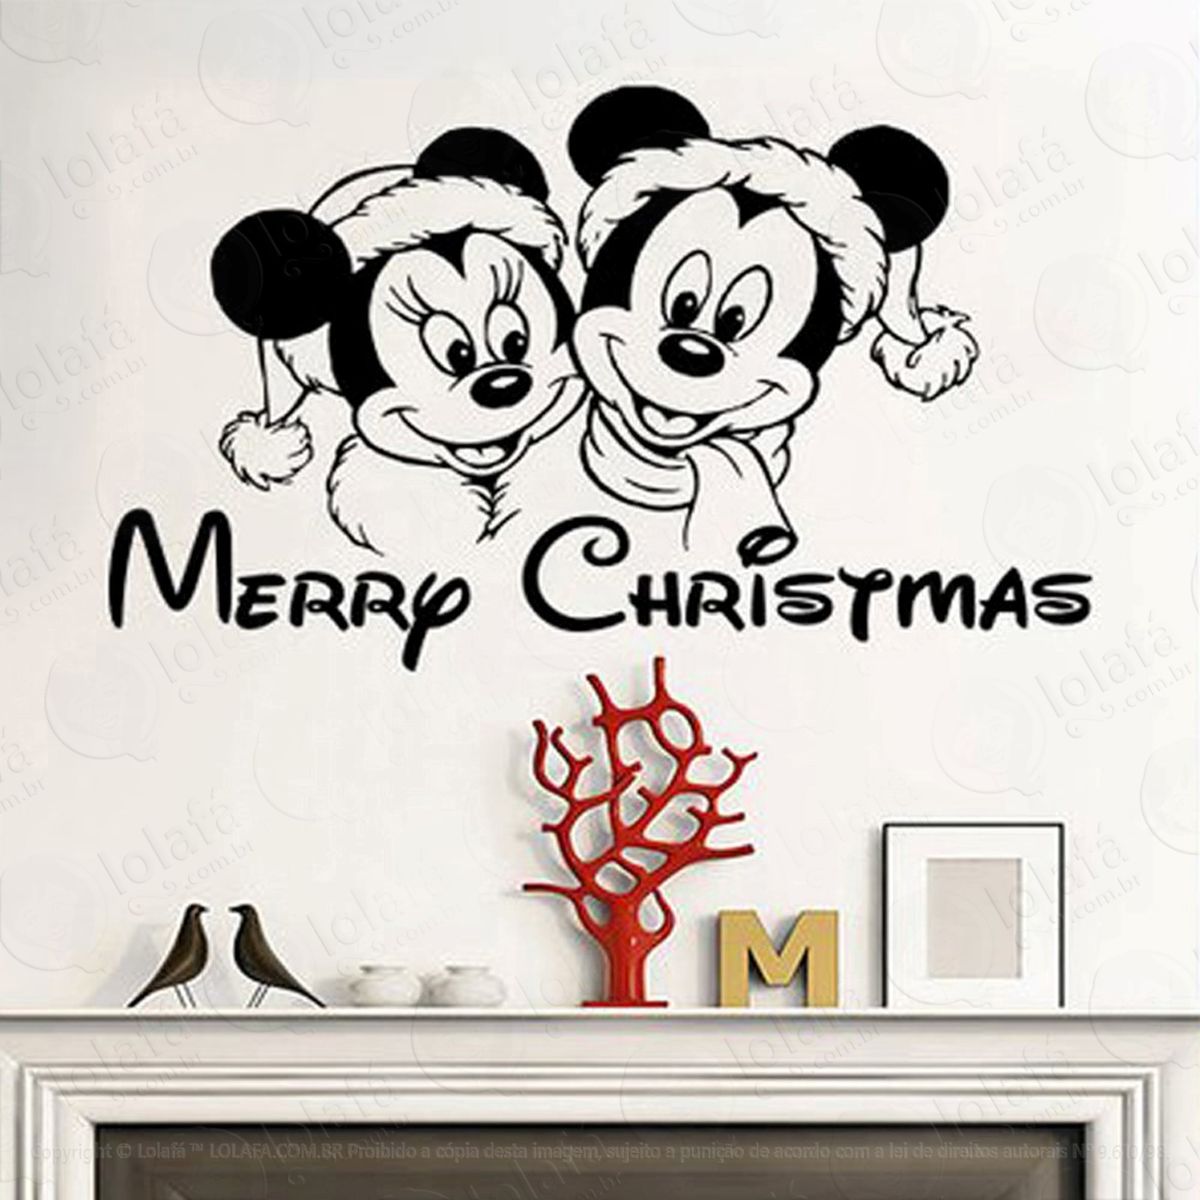 mickey e minie adesivo de natal para vitrine, parede, porta de vidro - decoração natalina mod:157